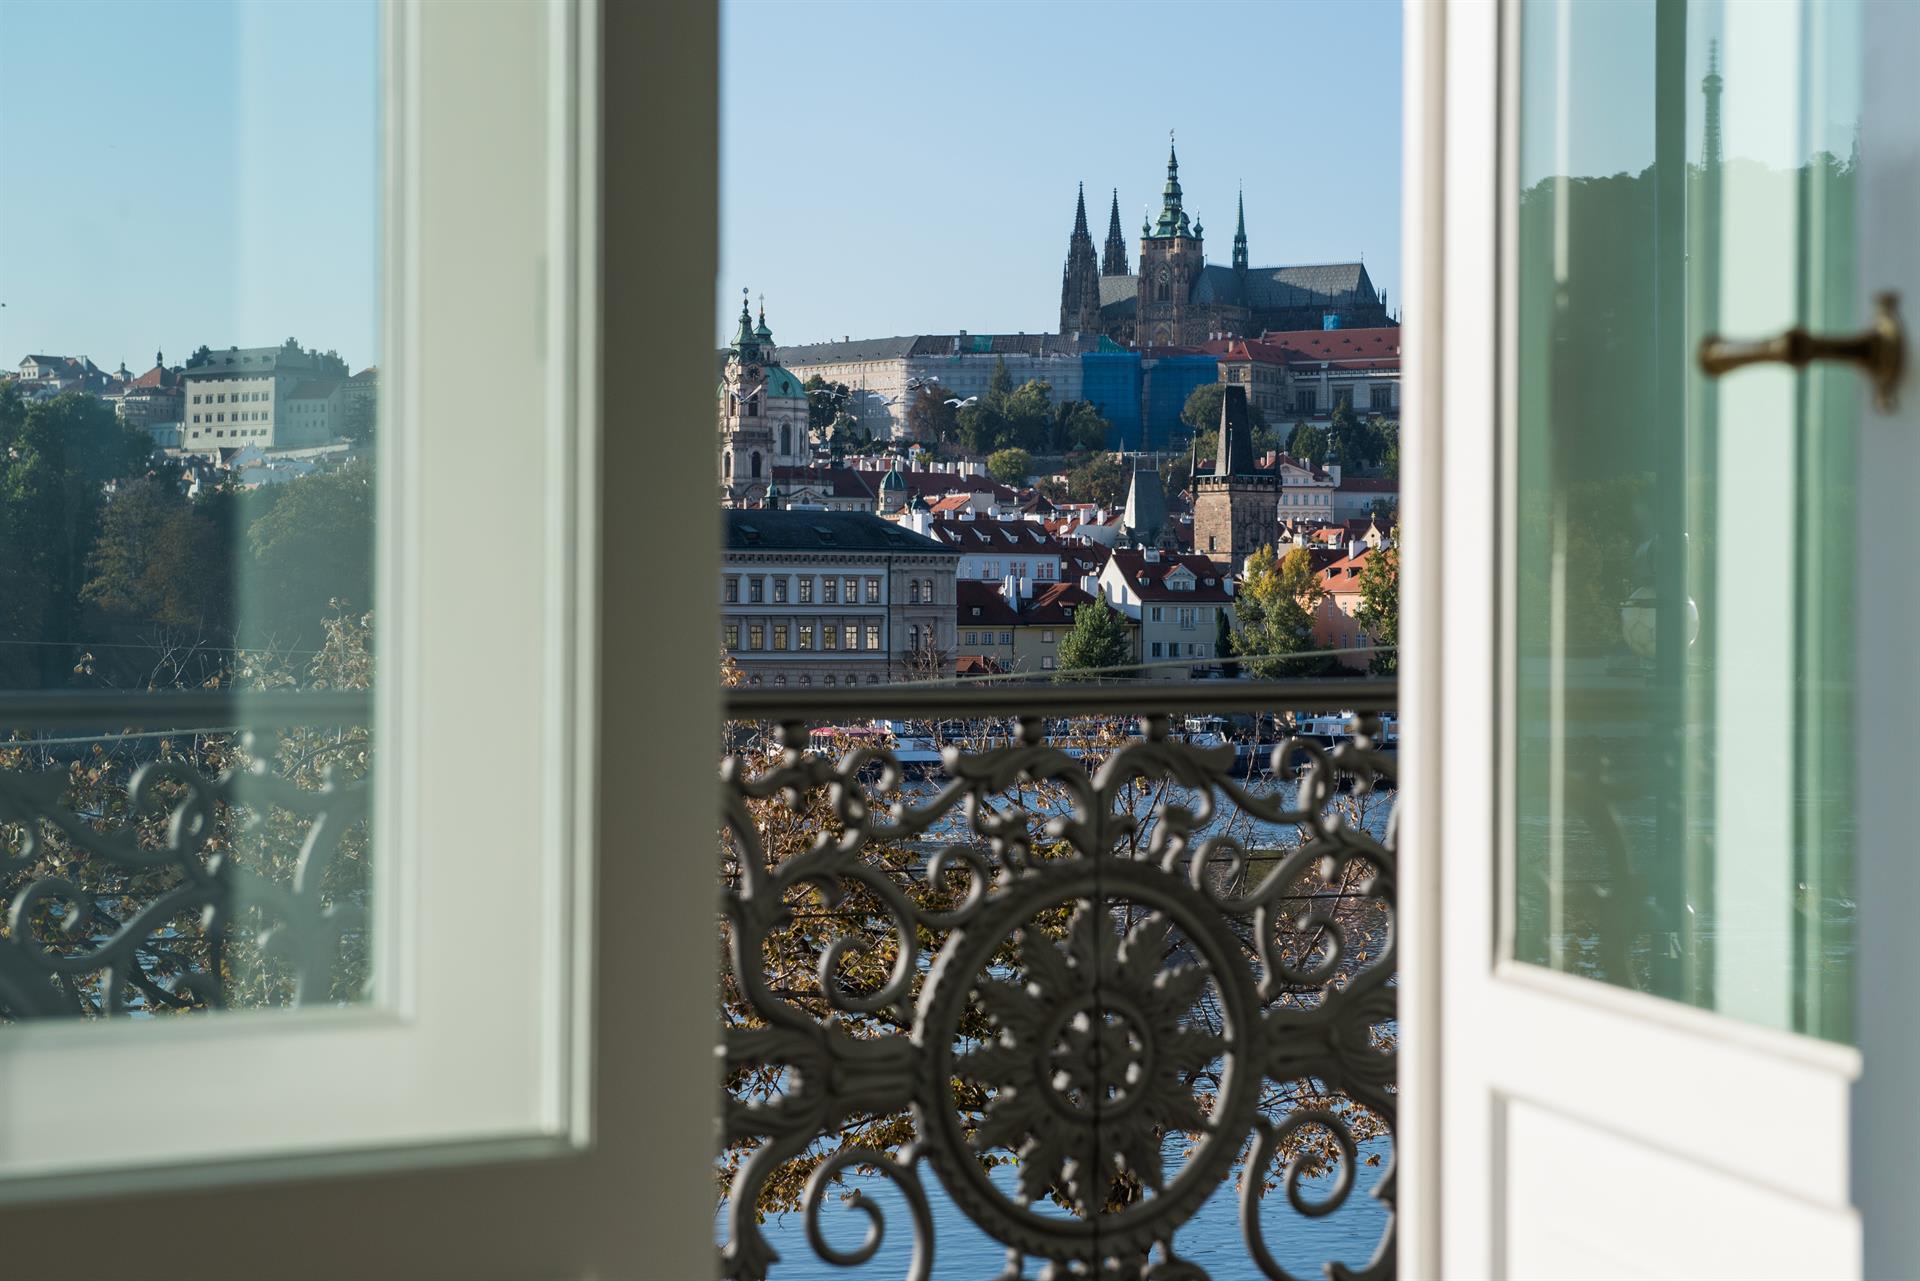 S celkovou částkou 147 milionů korun se tak v nabídce jednalo o čtvrtý nejdražší byt na českém realitním trhu.